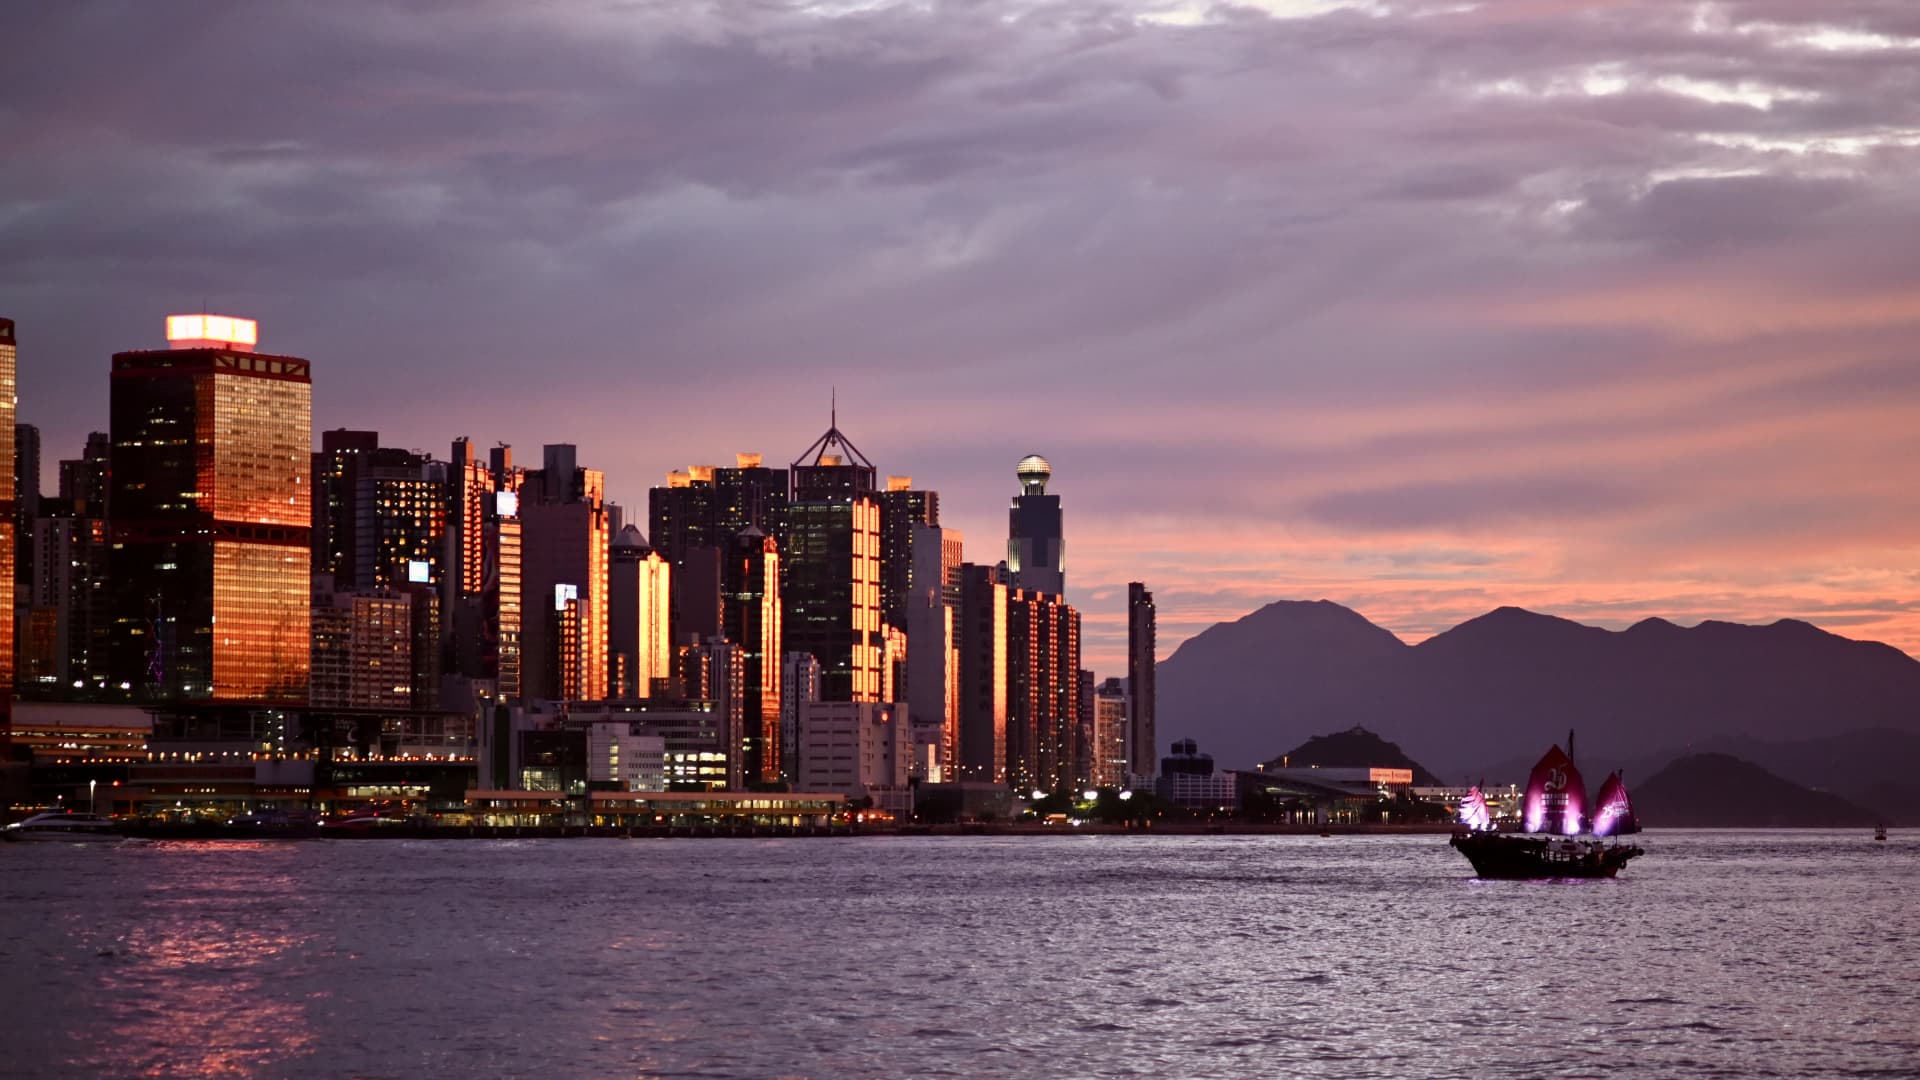 아시아 태평양 시장, 월스트리트, 산업 생산 및 홍콩의 규제 완화